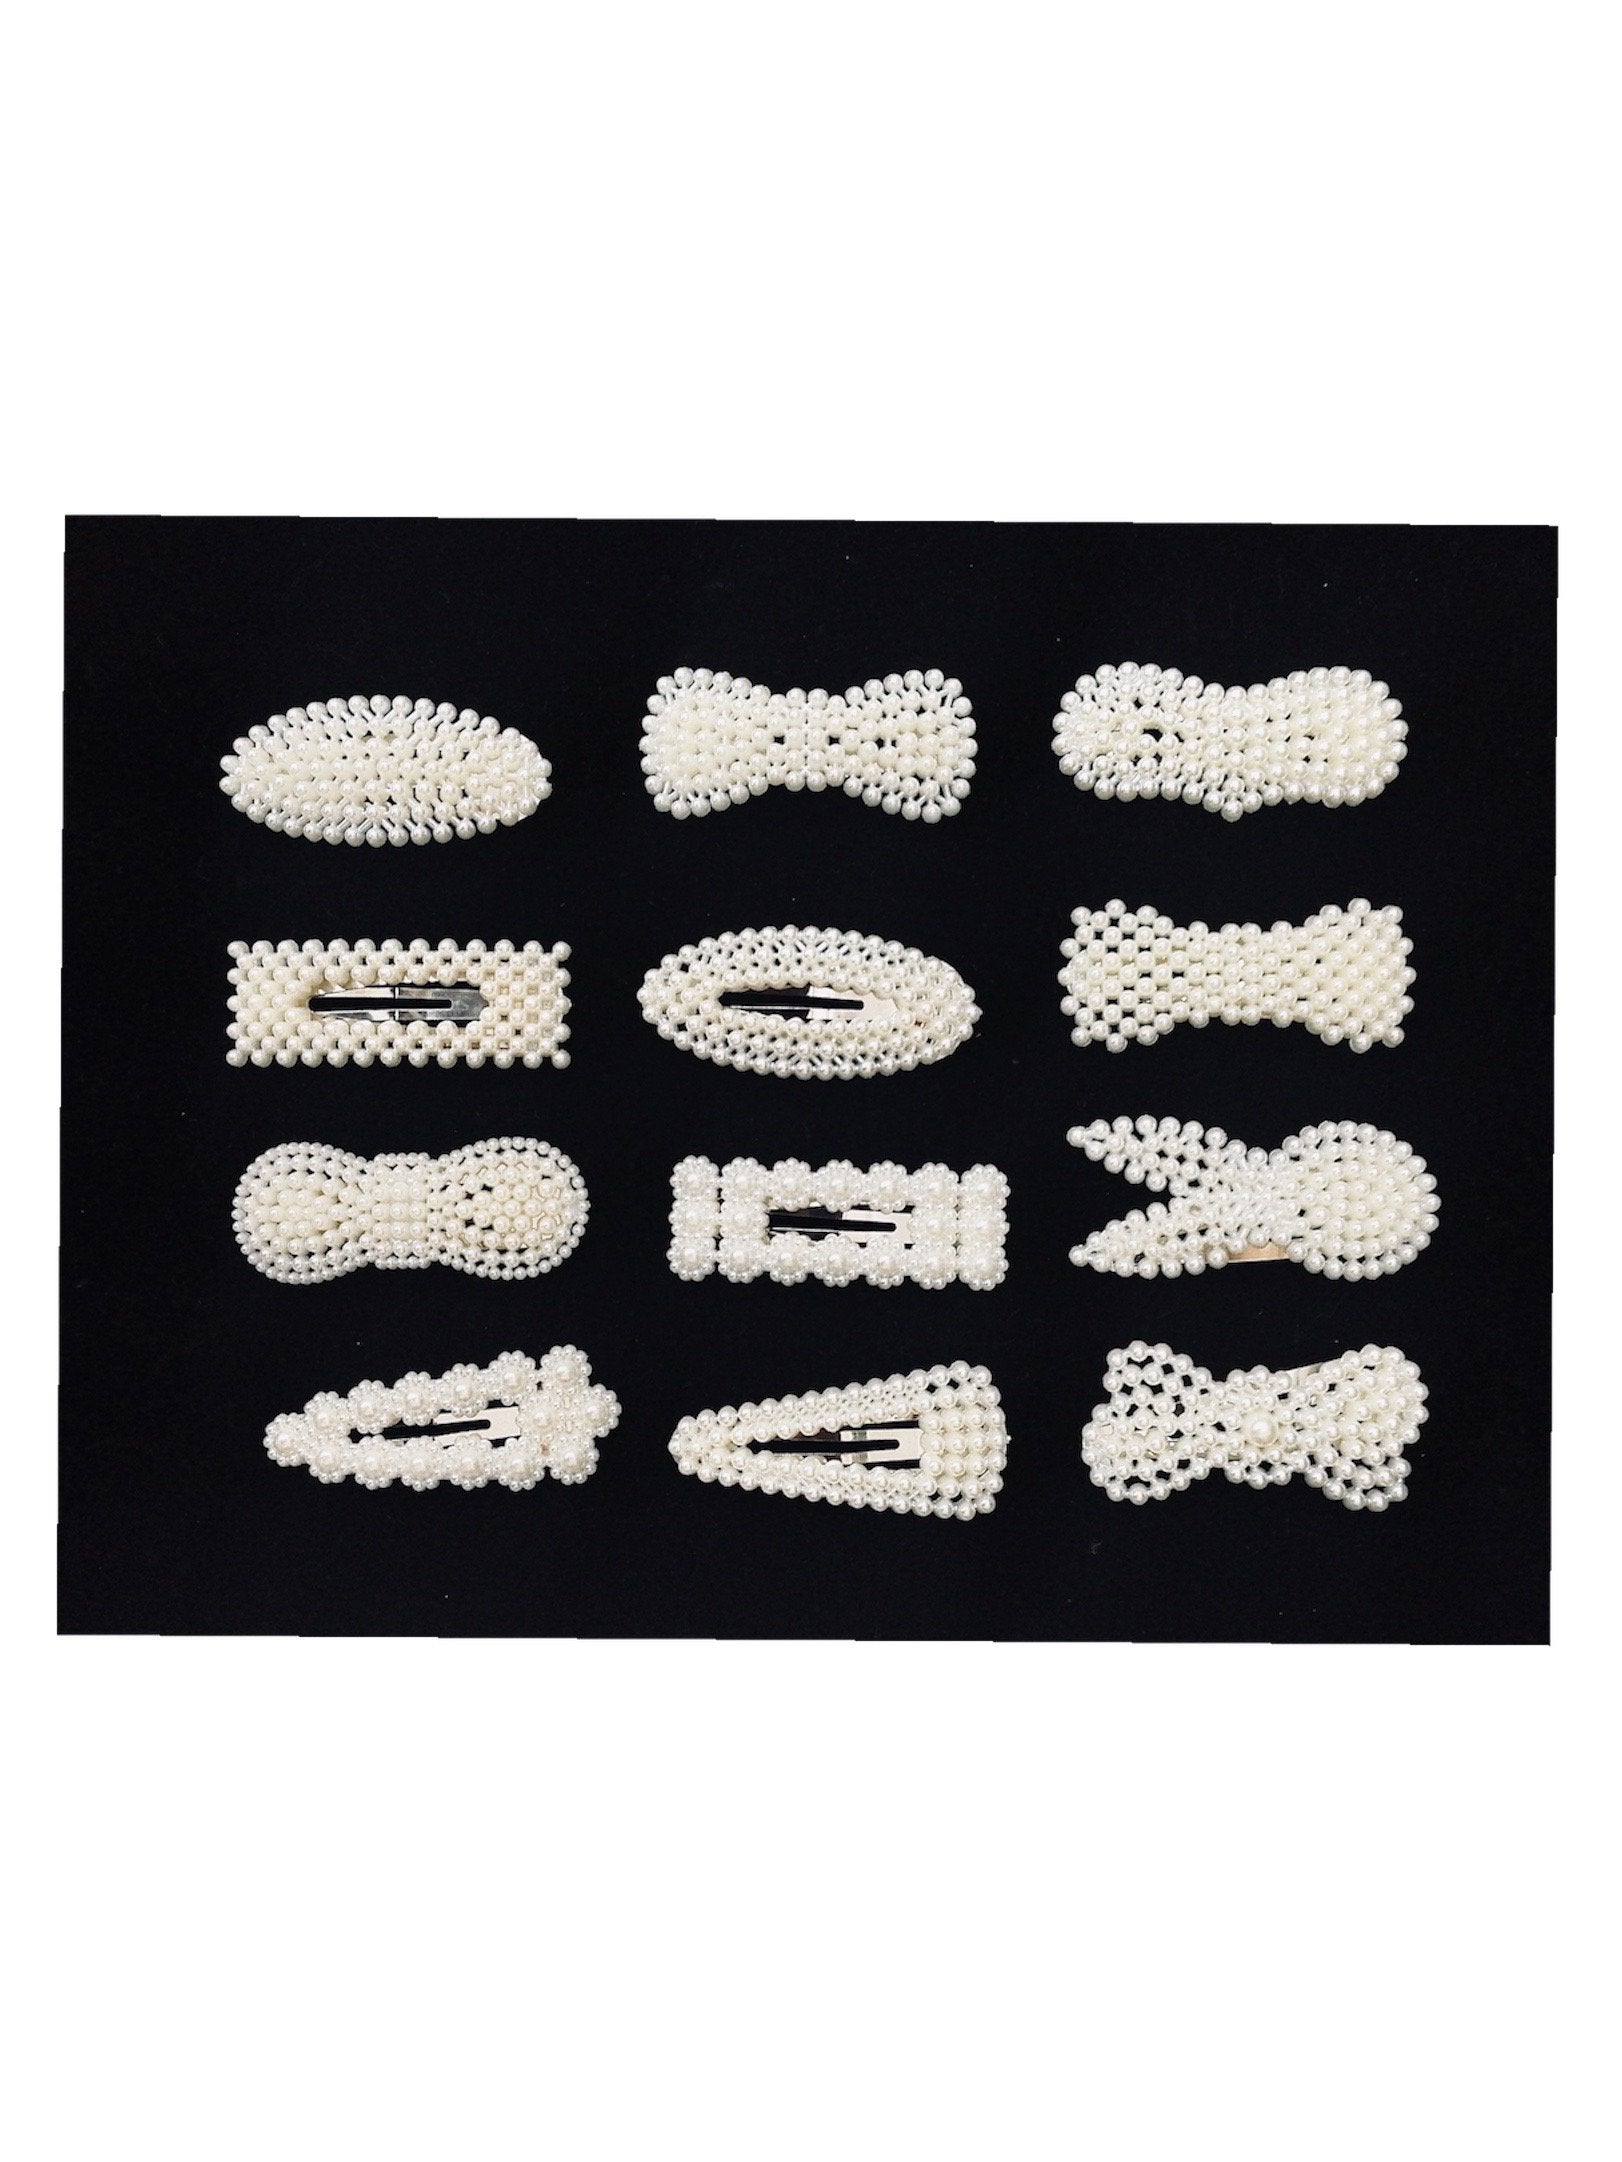 LOT DE 72 - Barrettes Pinces perles (12 modèles mélangés)   0,58€/unité | Grossiste-pro